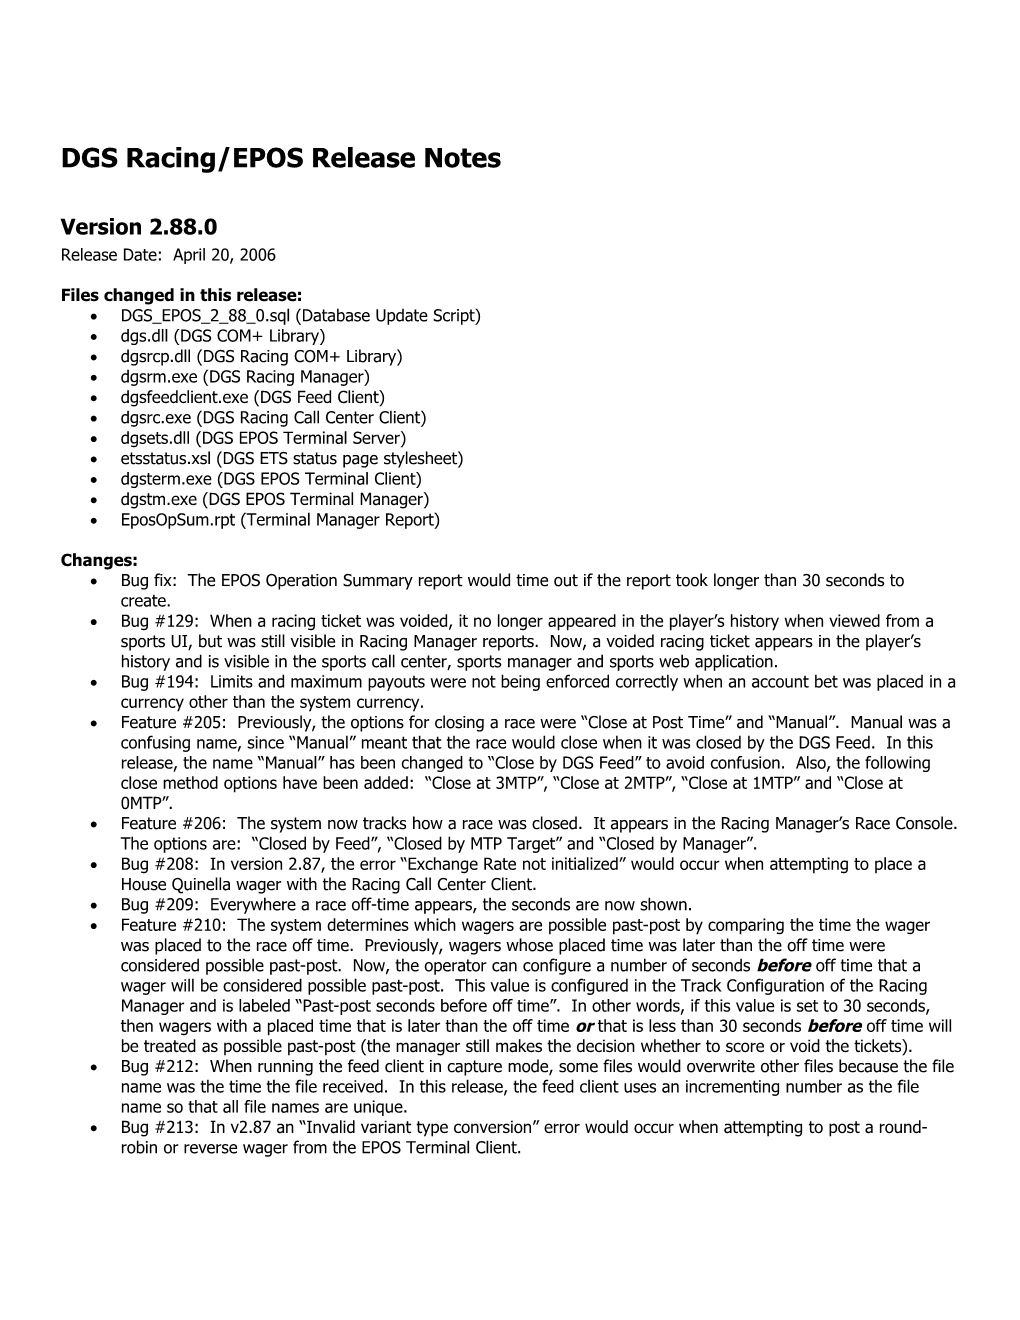 DGS EPOS Release Notes